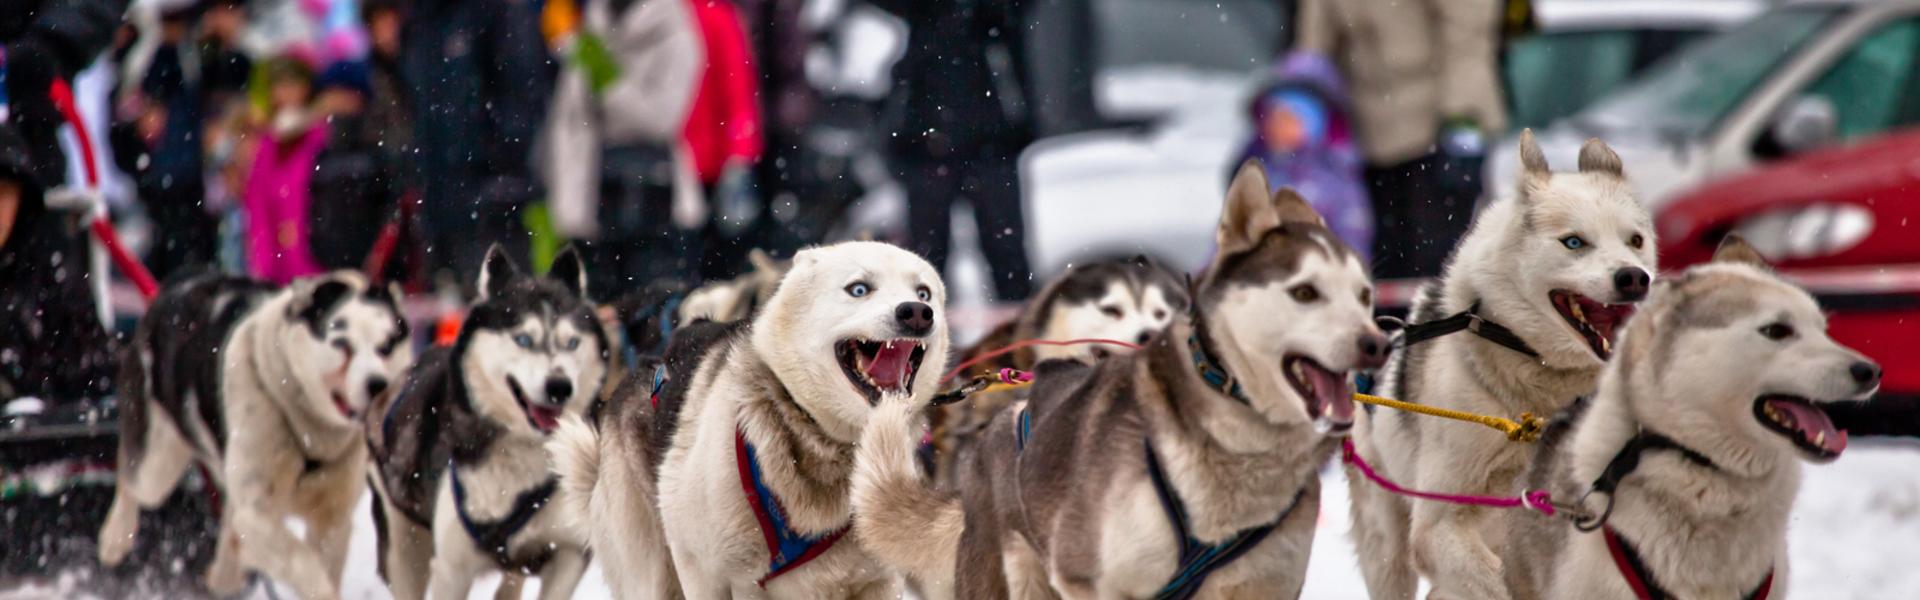 Bild: Małopolska zimą. Psie zaprzęgi – rekreacja dla miłośników ruchu i zwierząt